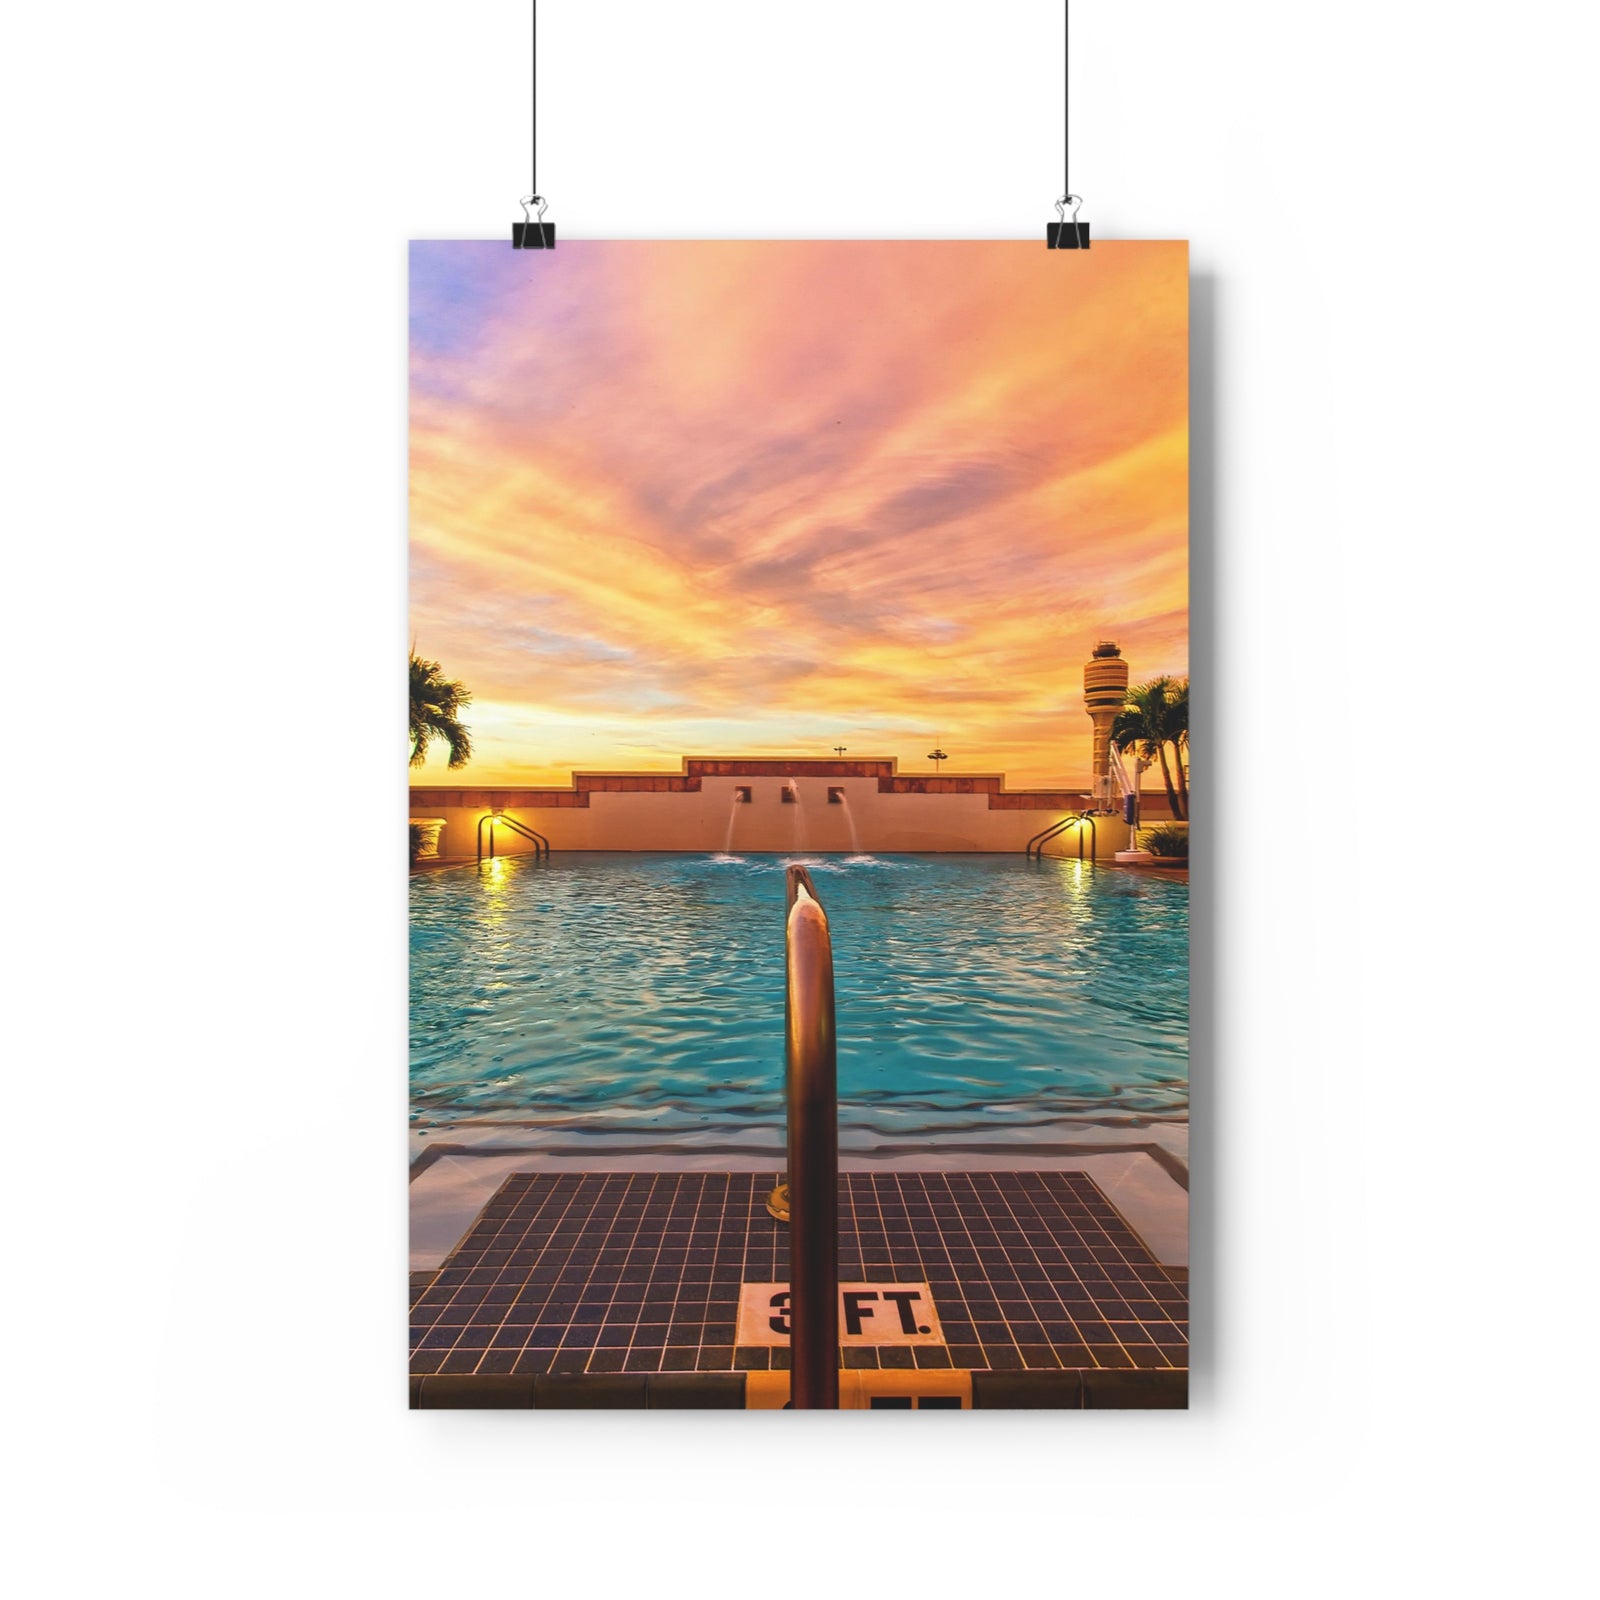 Impression du lever du soleil au bord de la piscine Hyatt